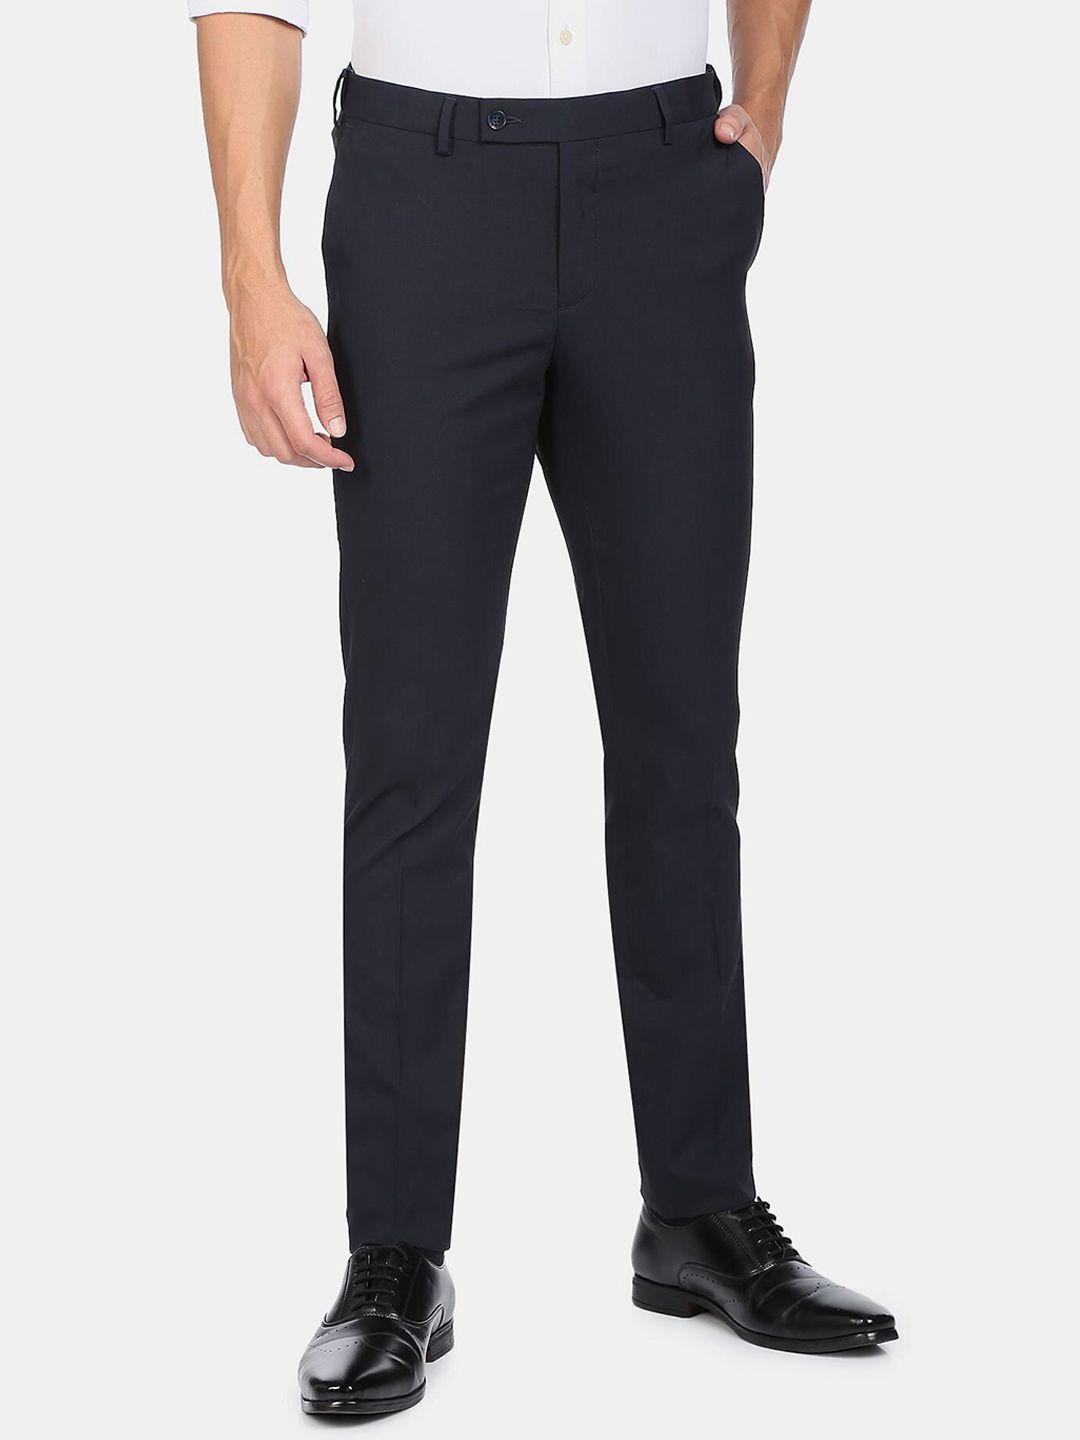 arrow-men-navy-blue-solid-autoflex-formal-trousers